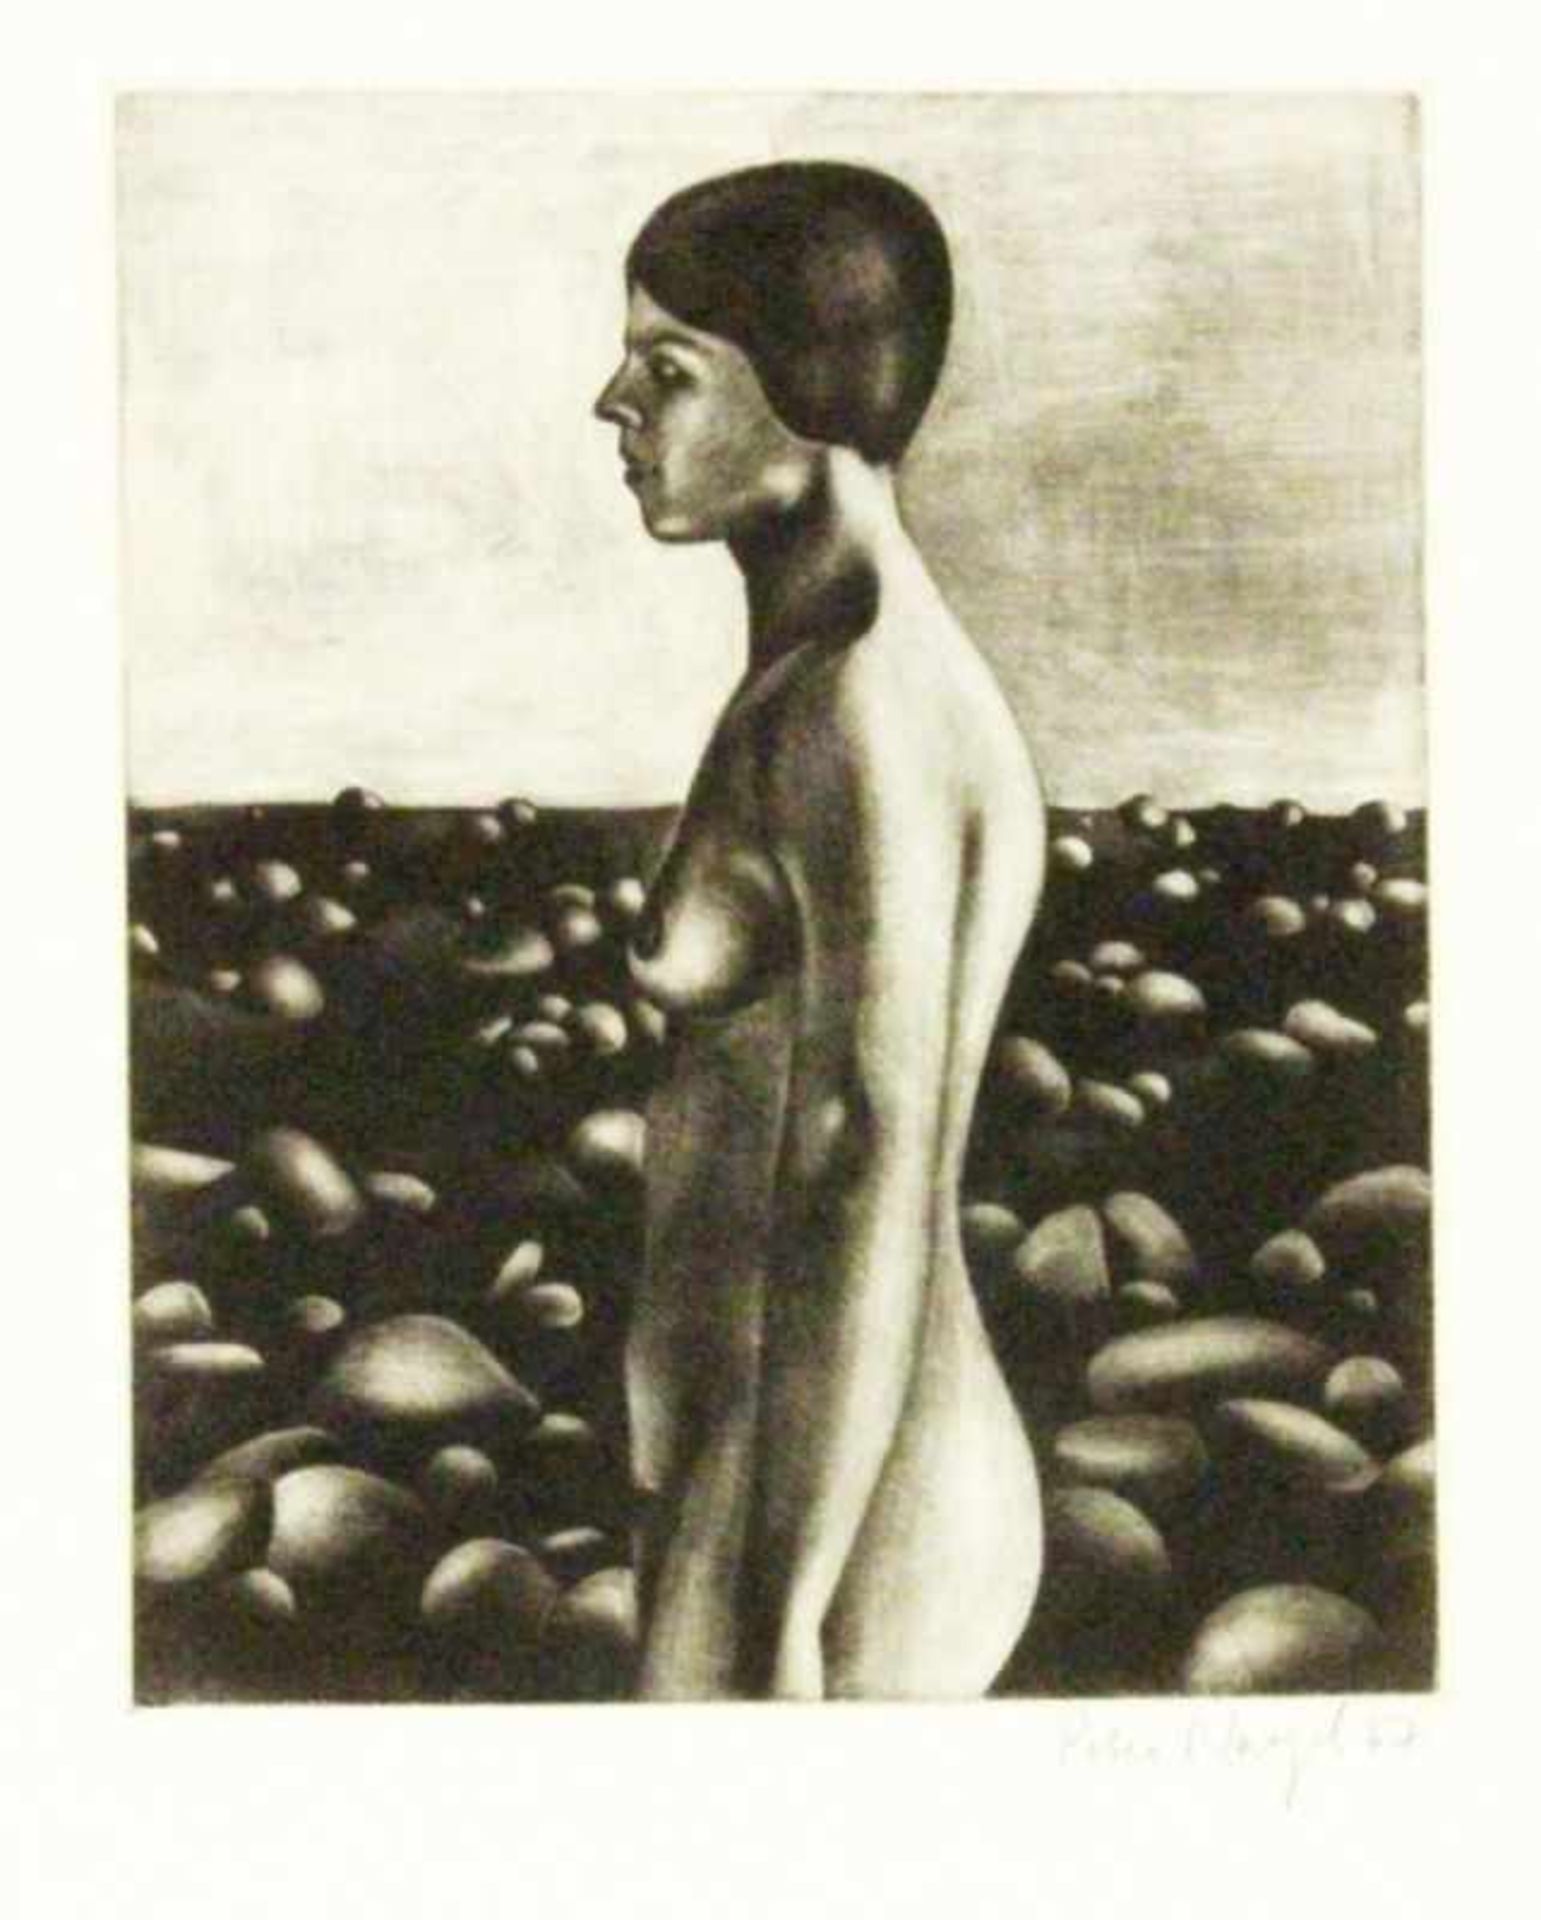 NAGEL, PETERKiel 1941 Weiblicher Halbakt. Radierung, handsigniert und dat: (19)67. Bildmaß 21,2x17,